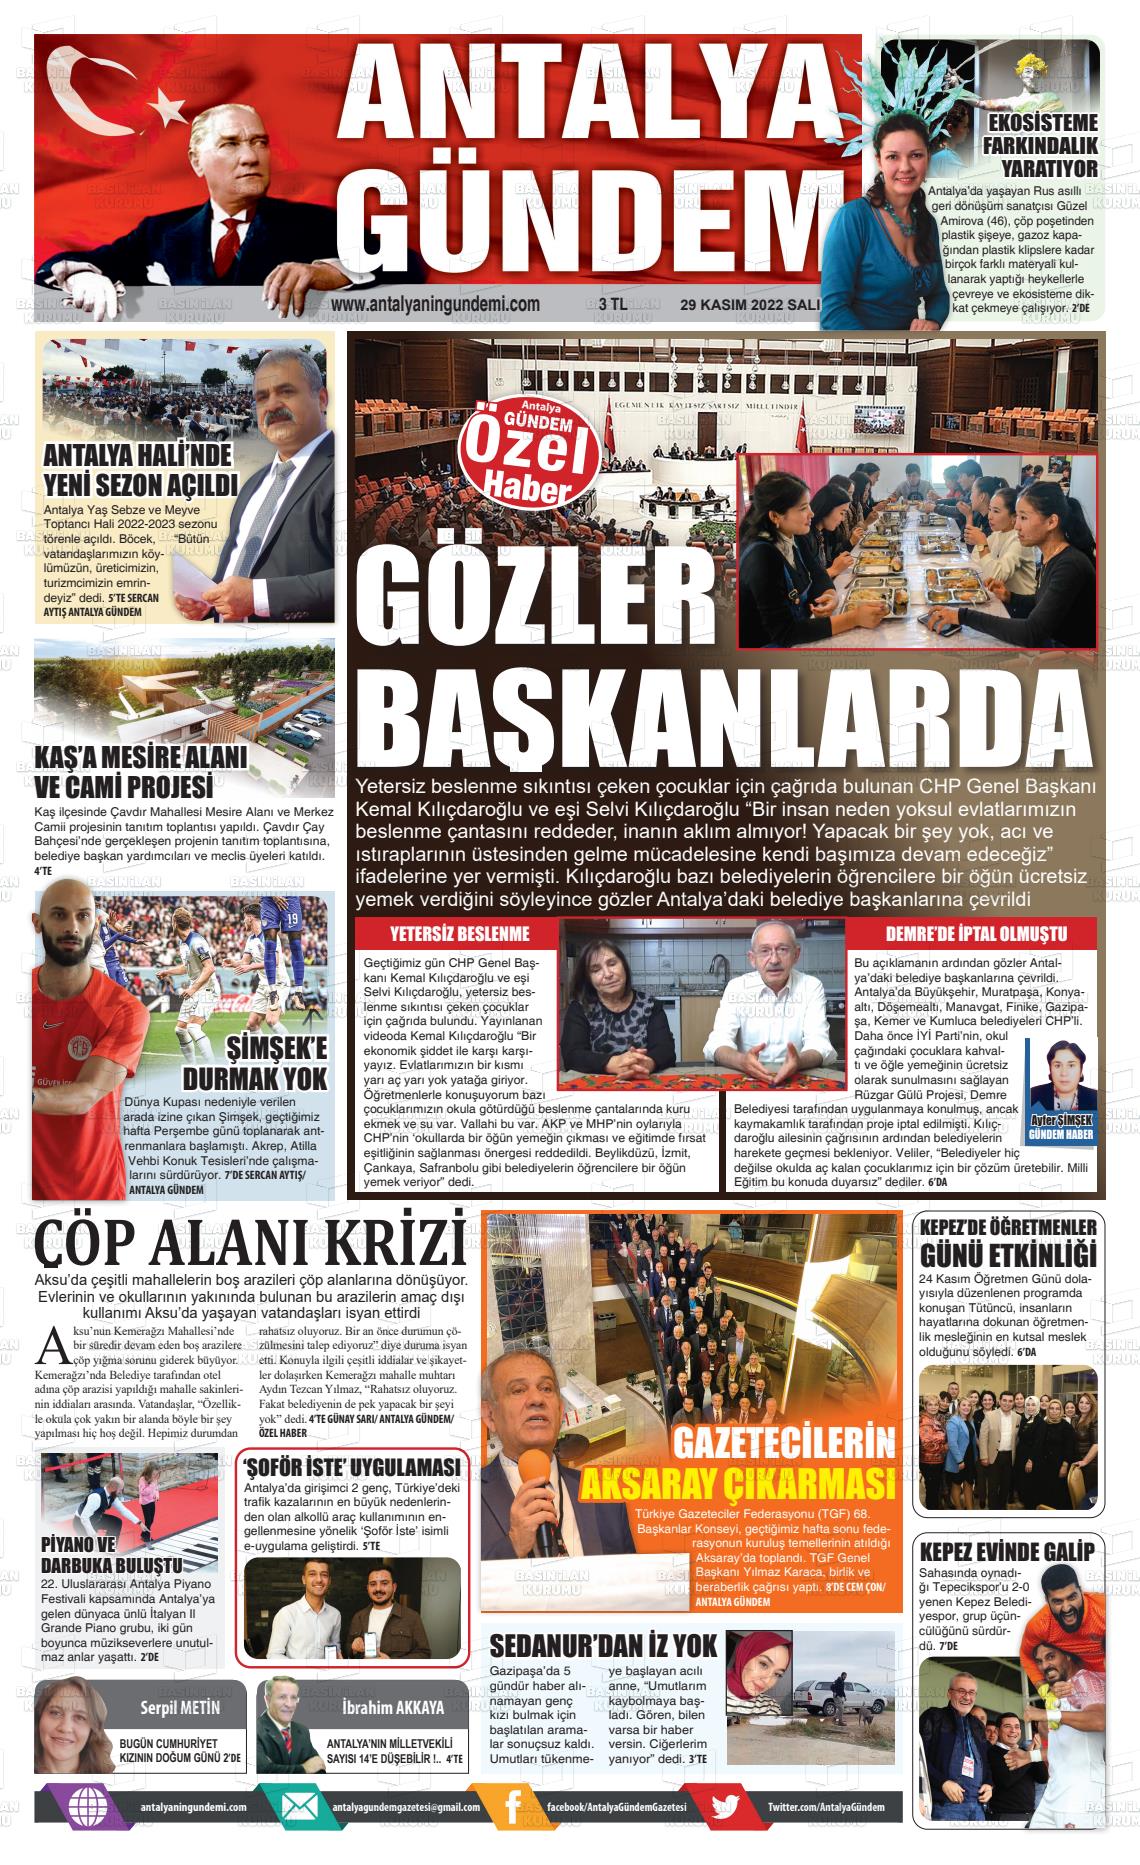 29 Kasım 2022 Antalya'nın Gündemi Gazete Manşeti